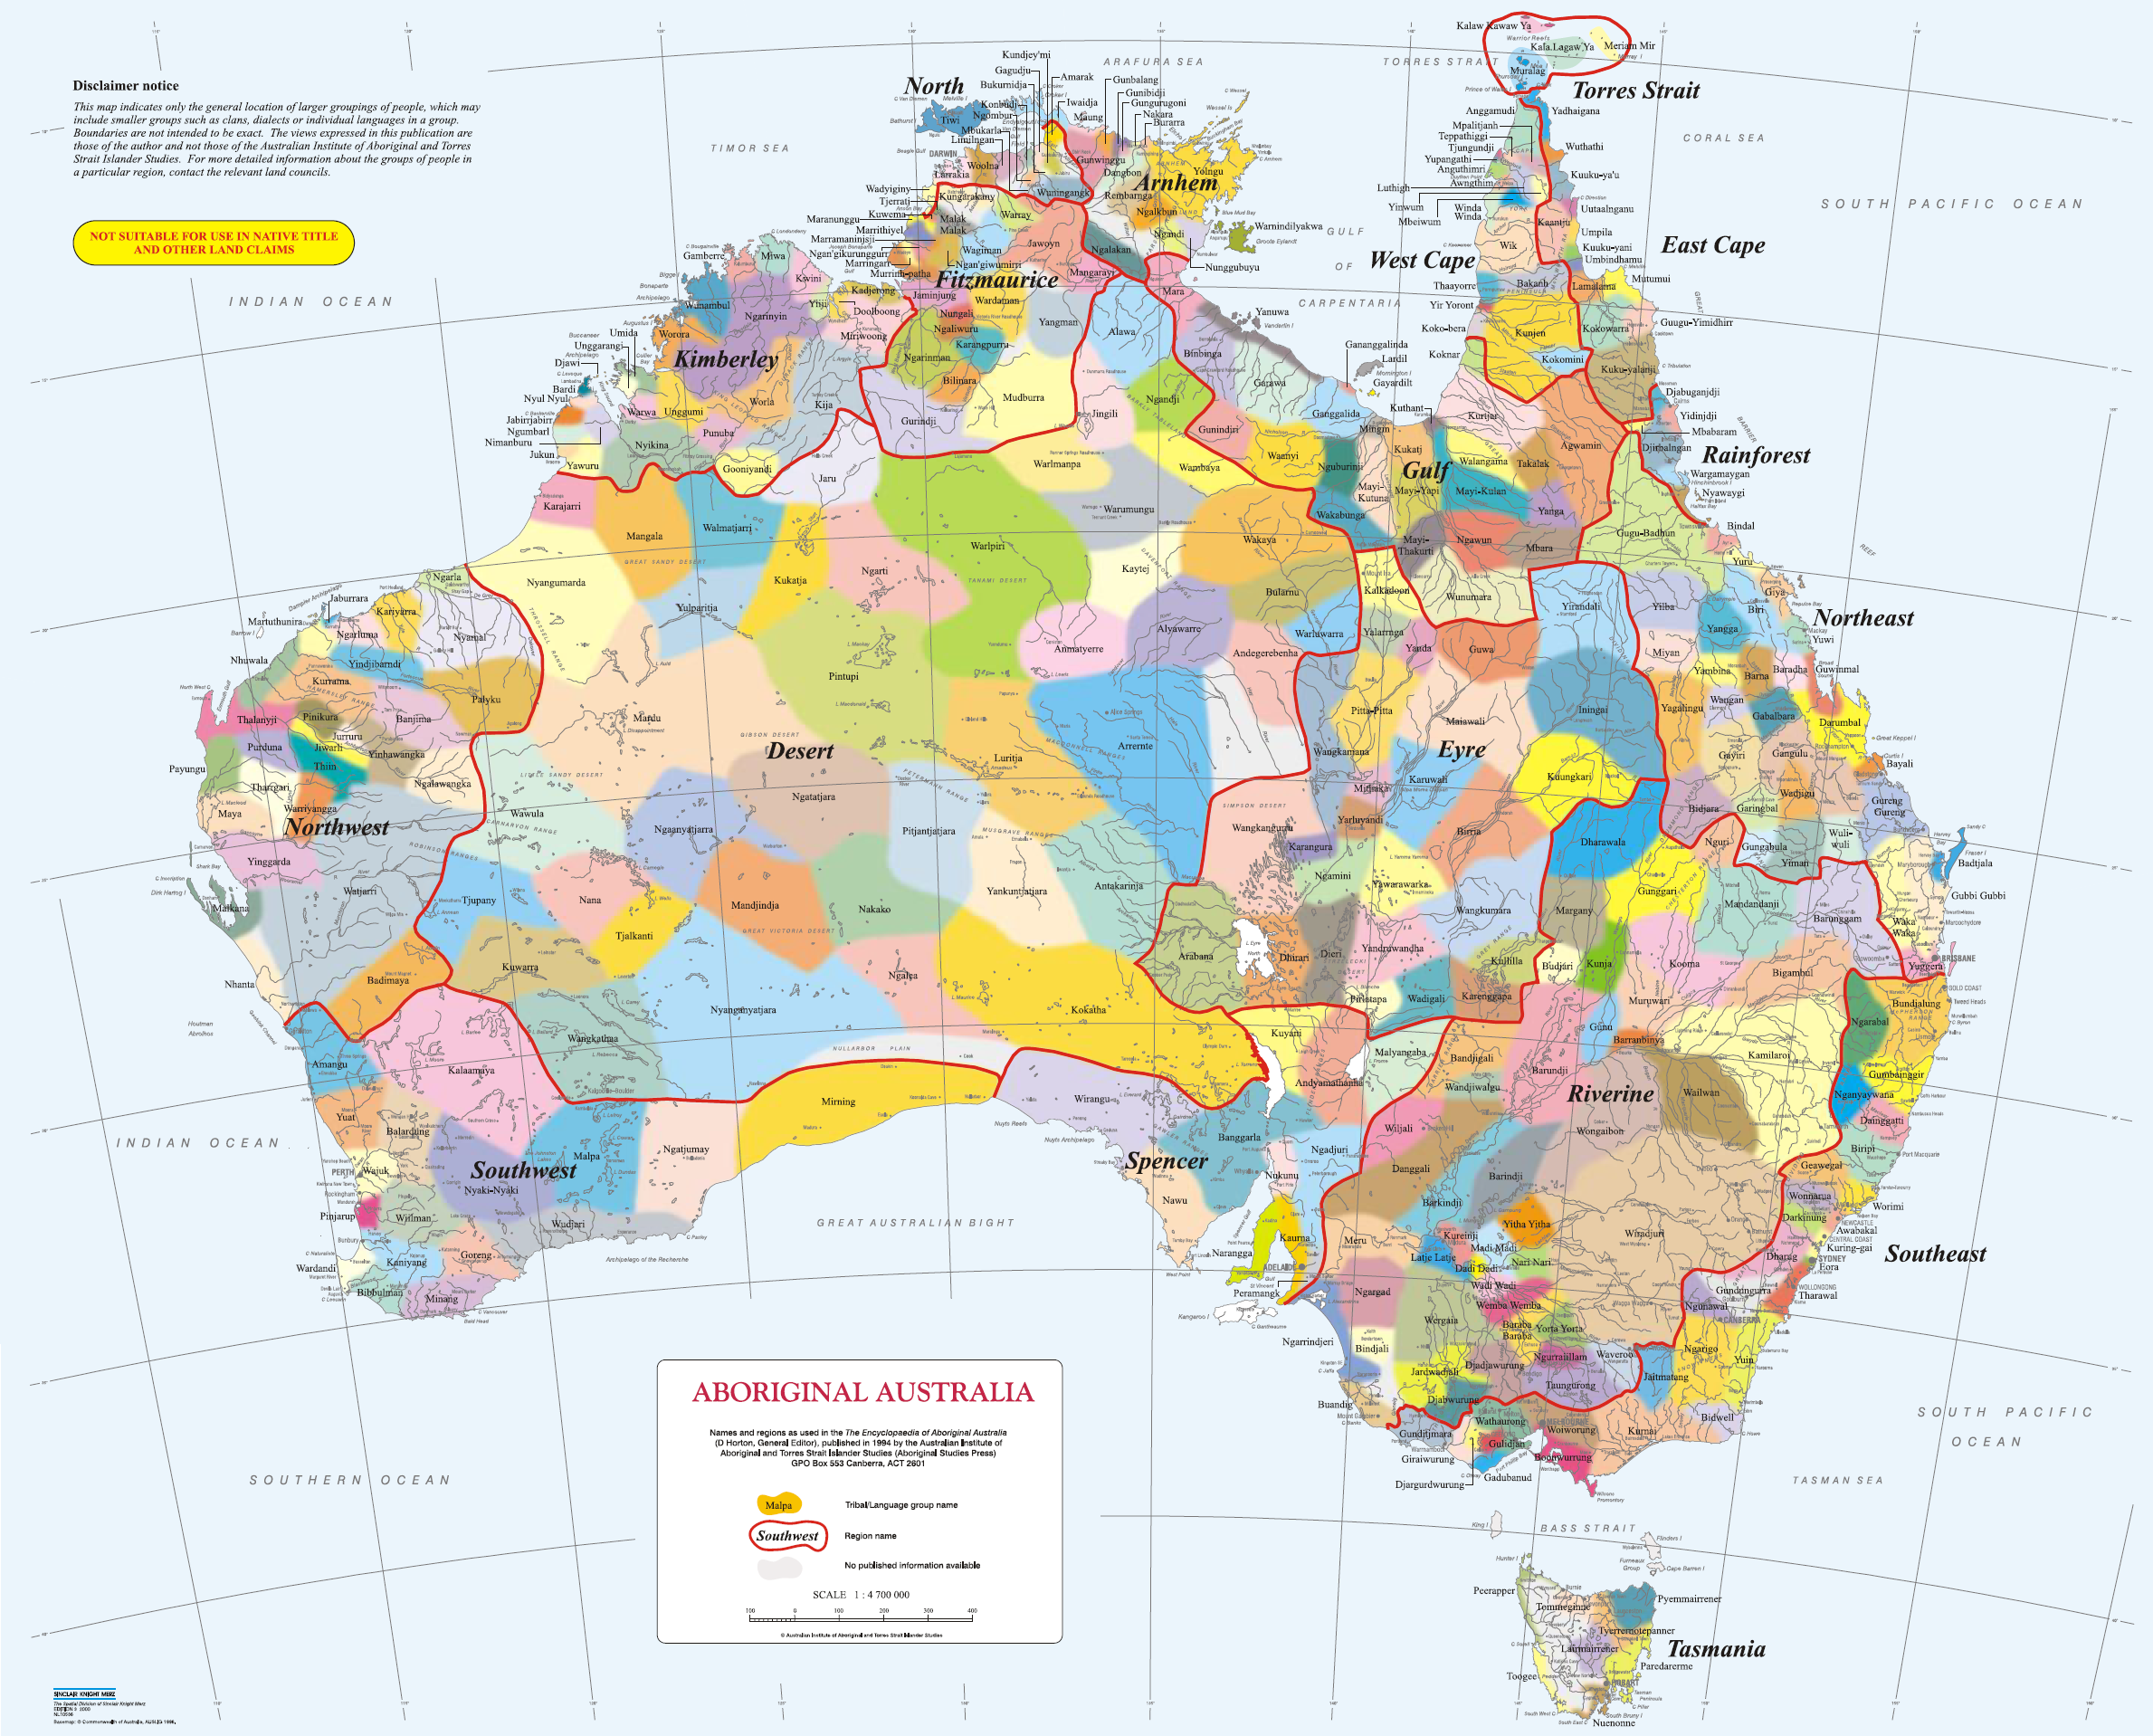 ABC's Aboriginal Australia map